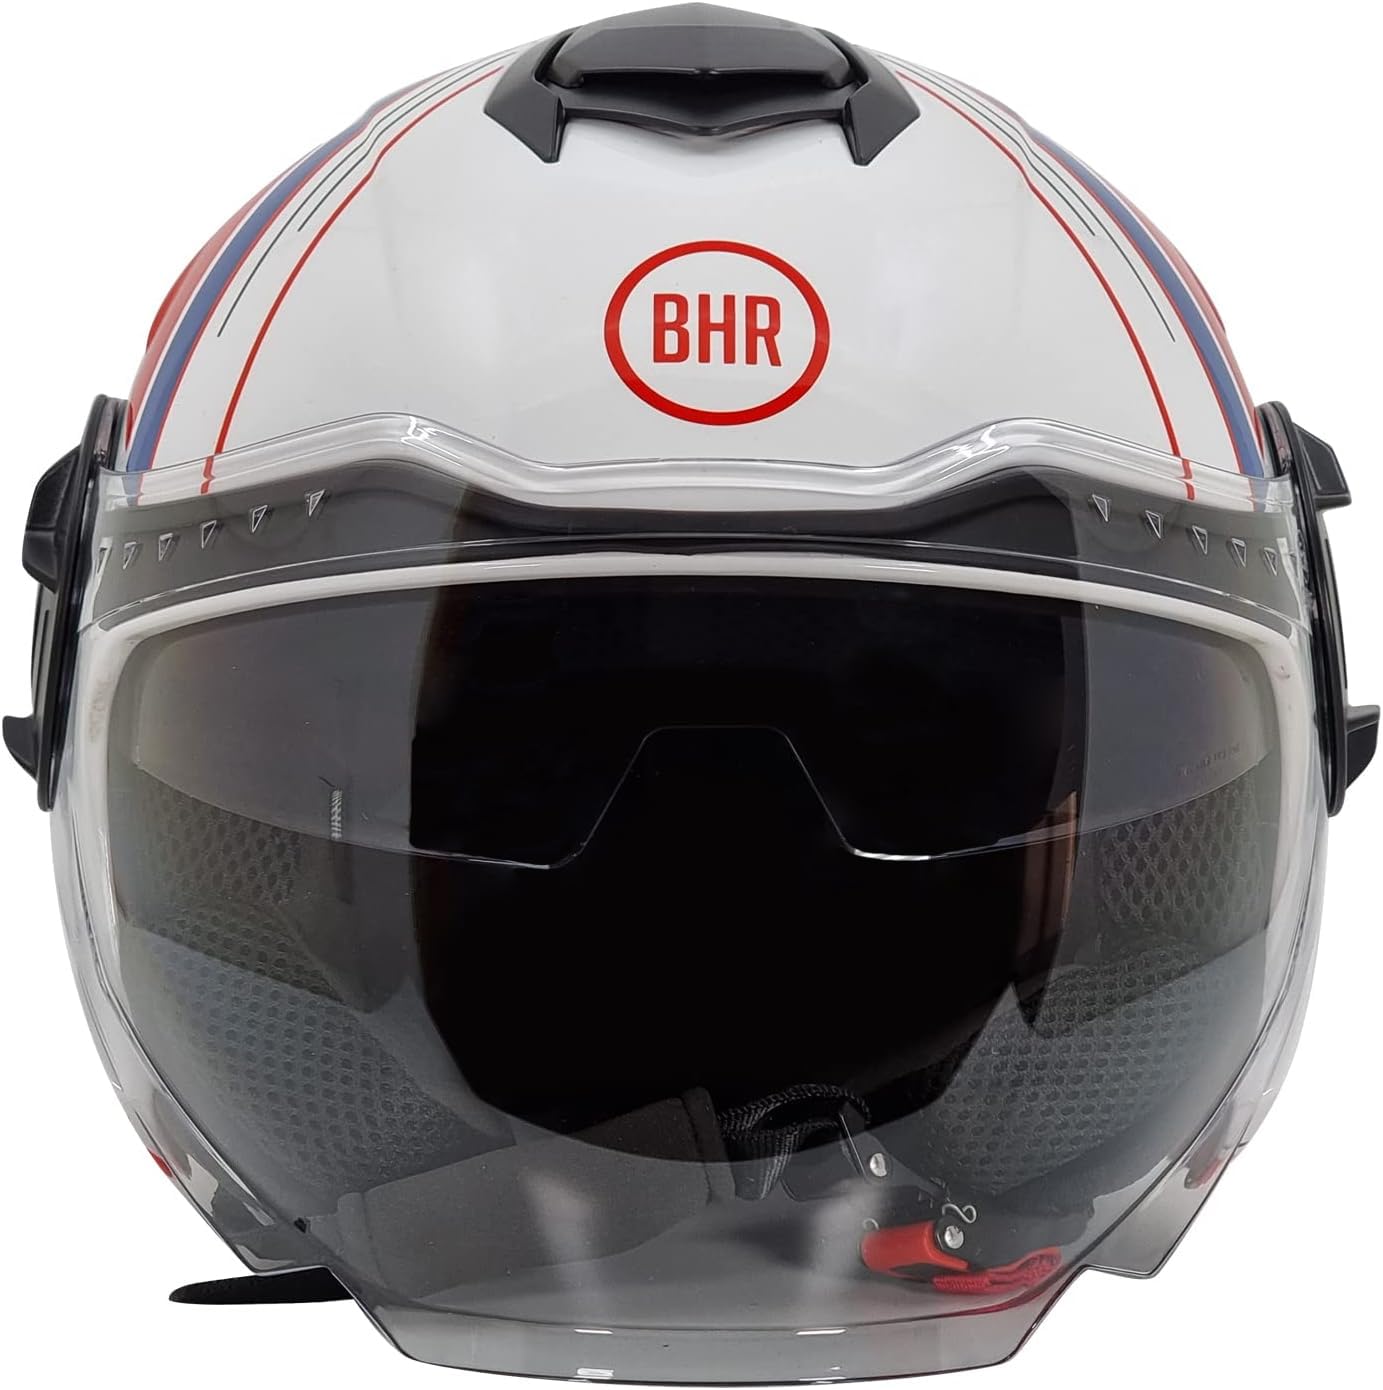 BHR Jet Helm Double Visor 830 FLASH, Scooter Helm mit ECE 22.06 Zulassung, Leichter & komfortabler Jet Helm mit innenliegender Sonnenblende, Cool White, XS von BHR